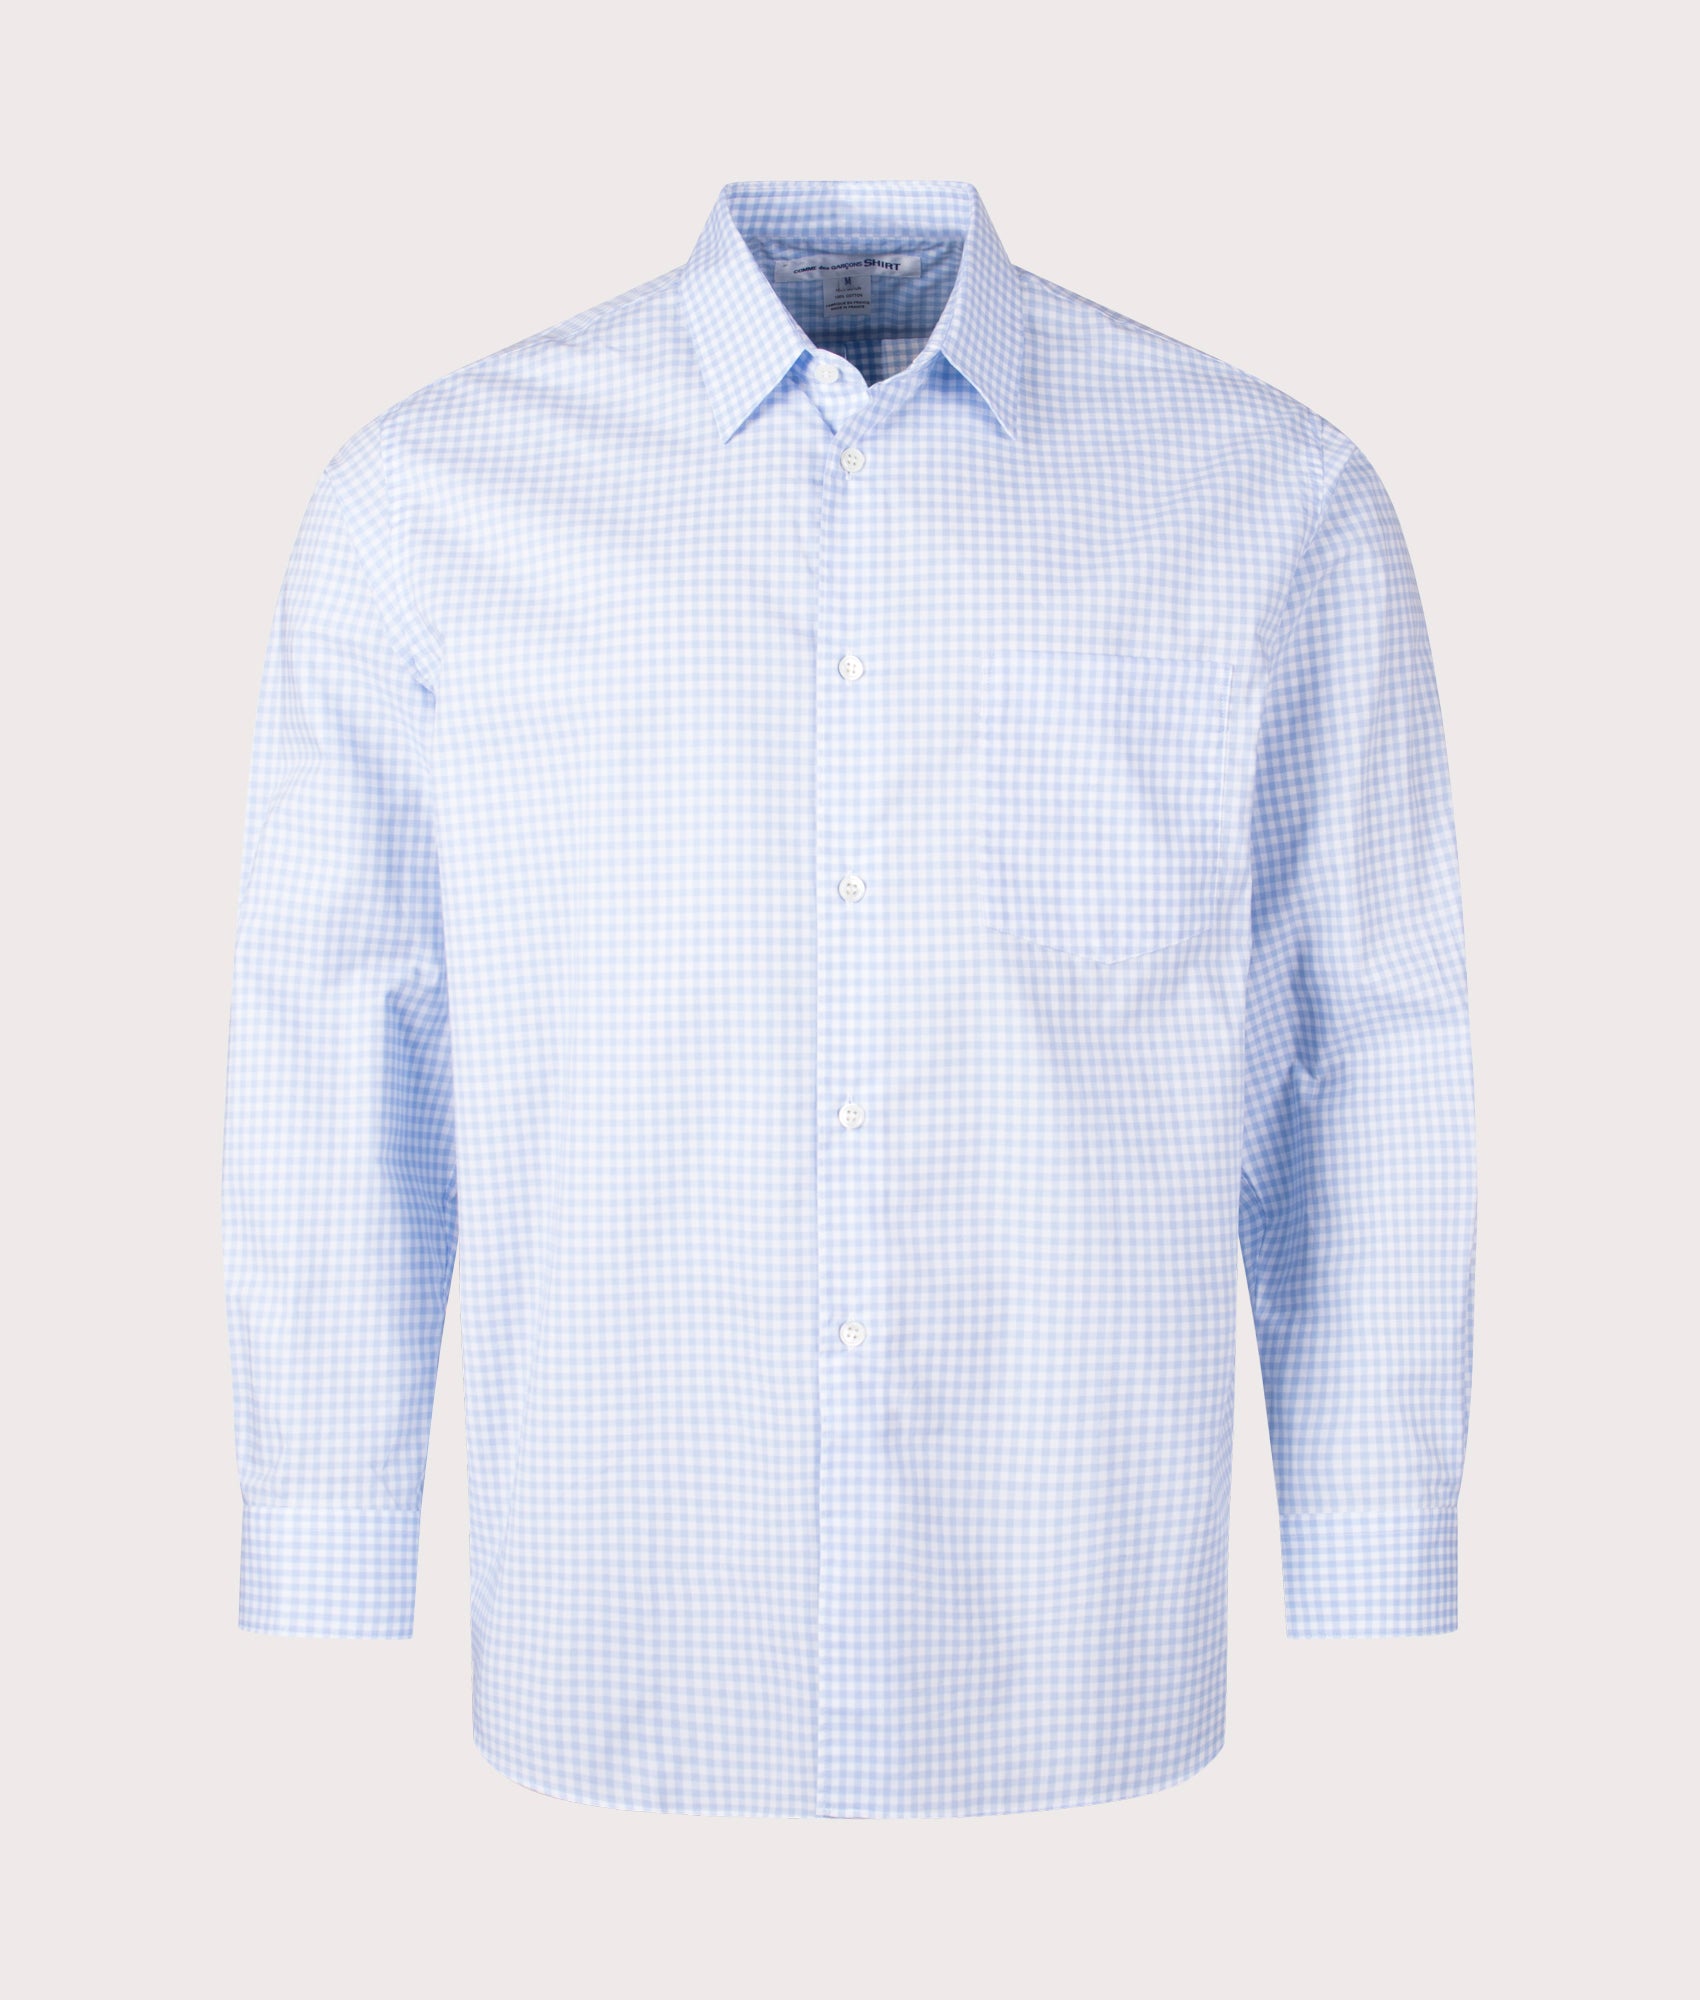 COMME des GARCONS SHIRT Mens Check Shirt - Colour: 2 White/Blue - Size: Medium